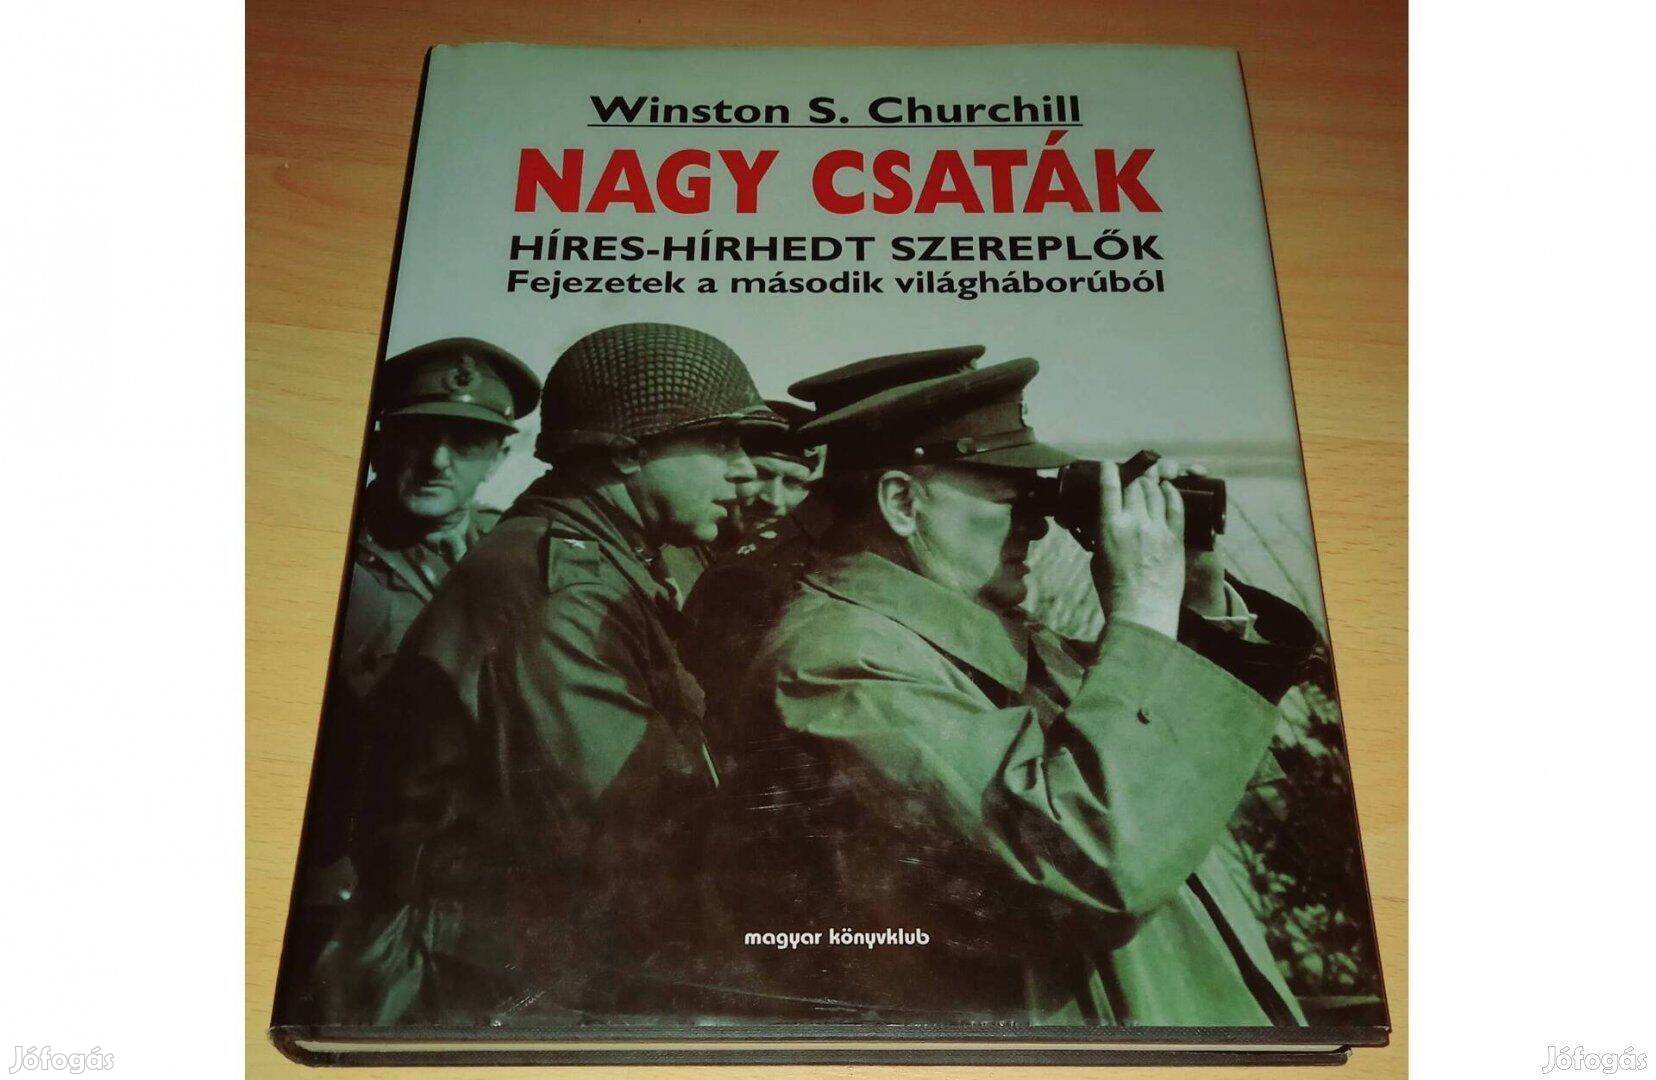 Winston S. Churchill - Nagy csaták c.könyve